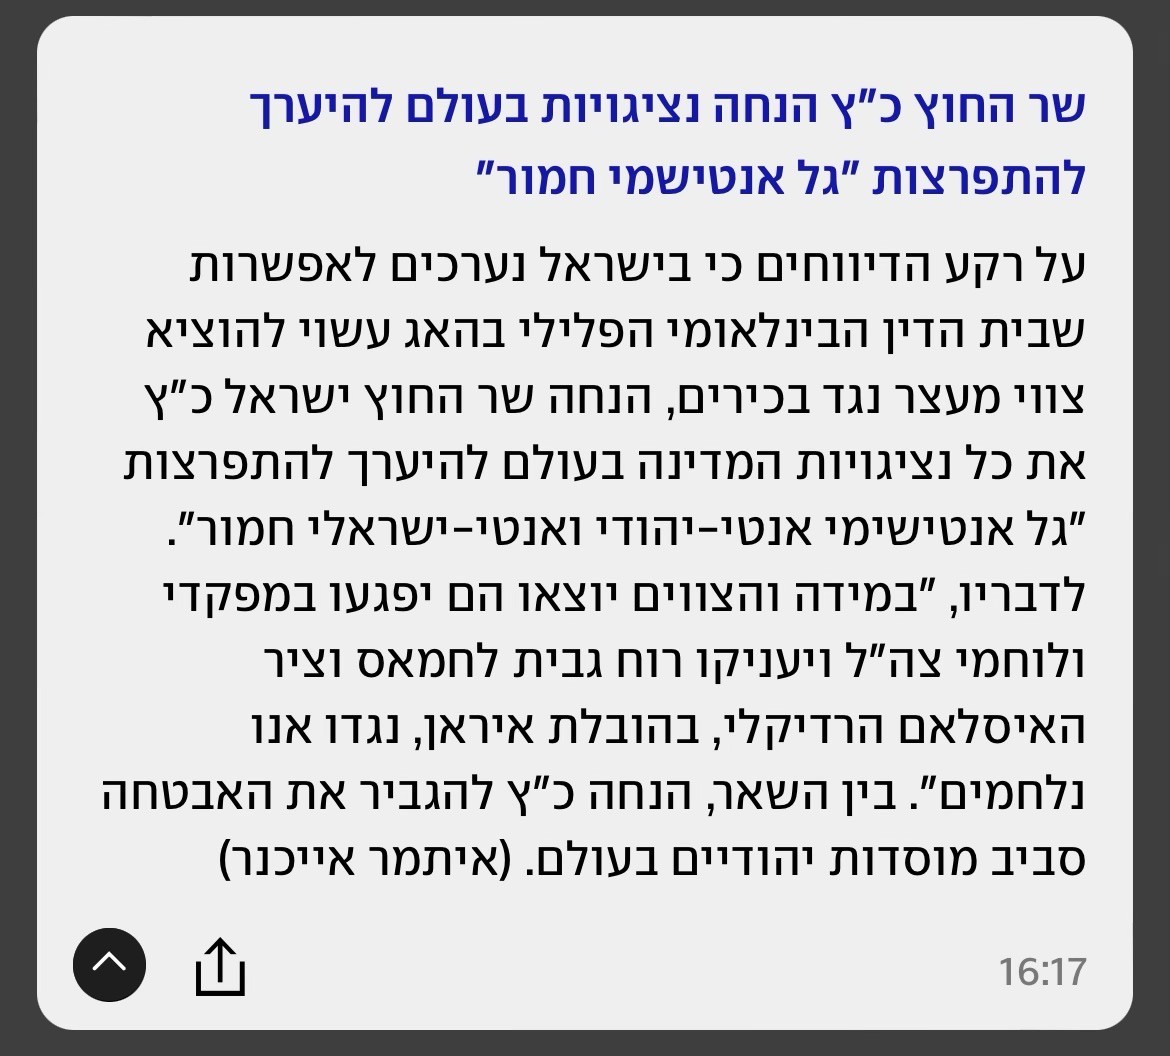 Original news brief in Hebrew